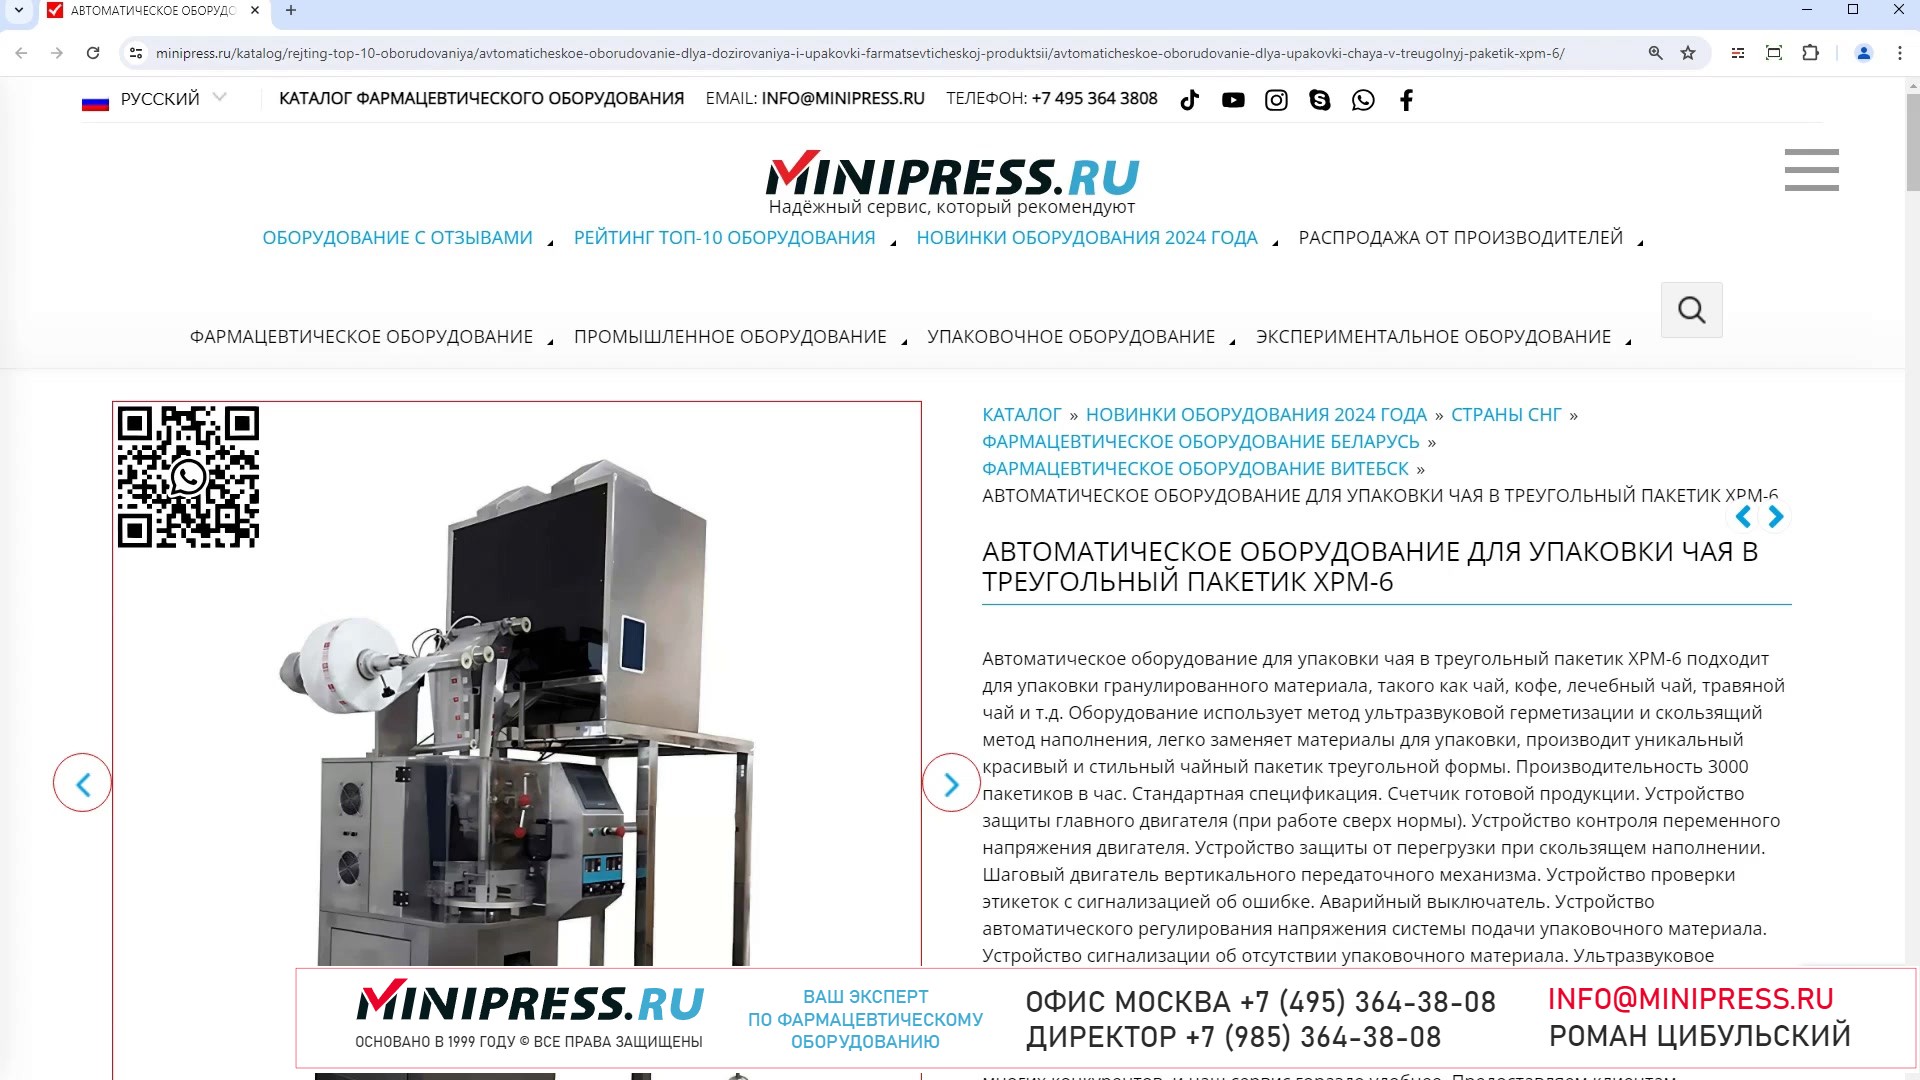 Minipress.ru Автоматическое оборудование для упаковки чая в треугольный пакетик XPM-6